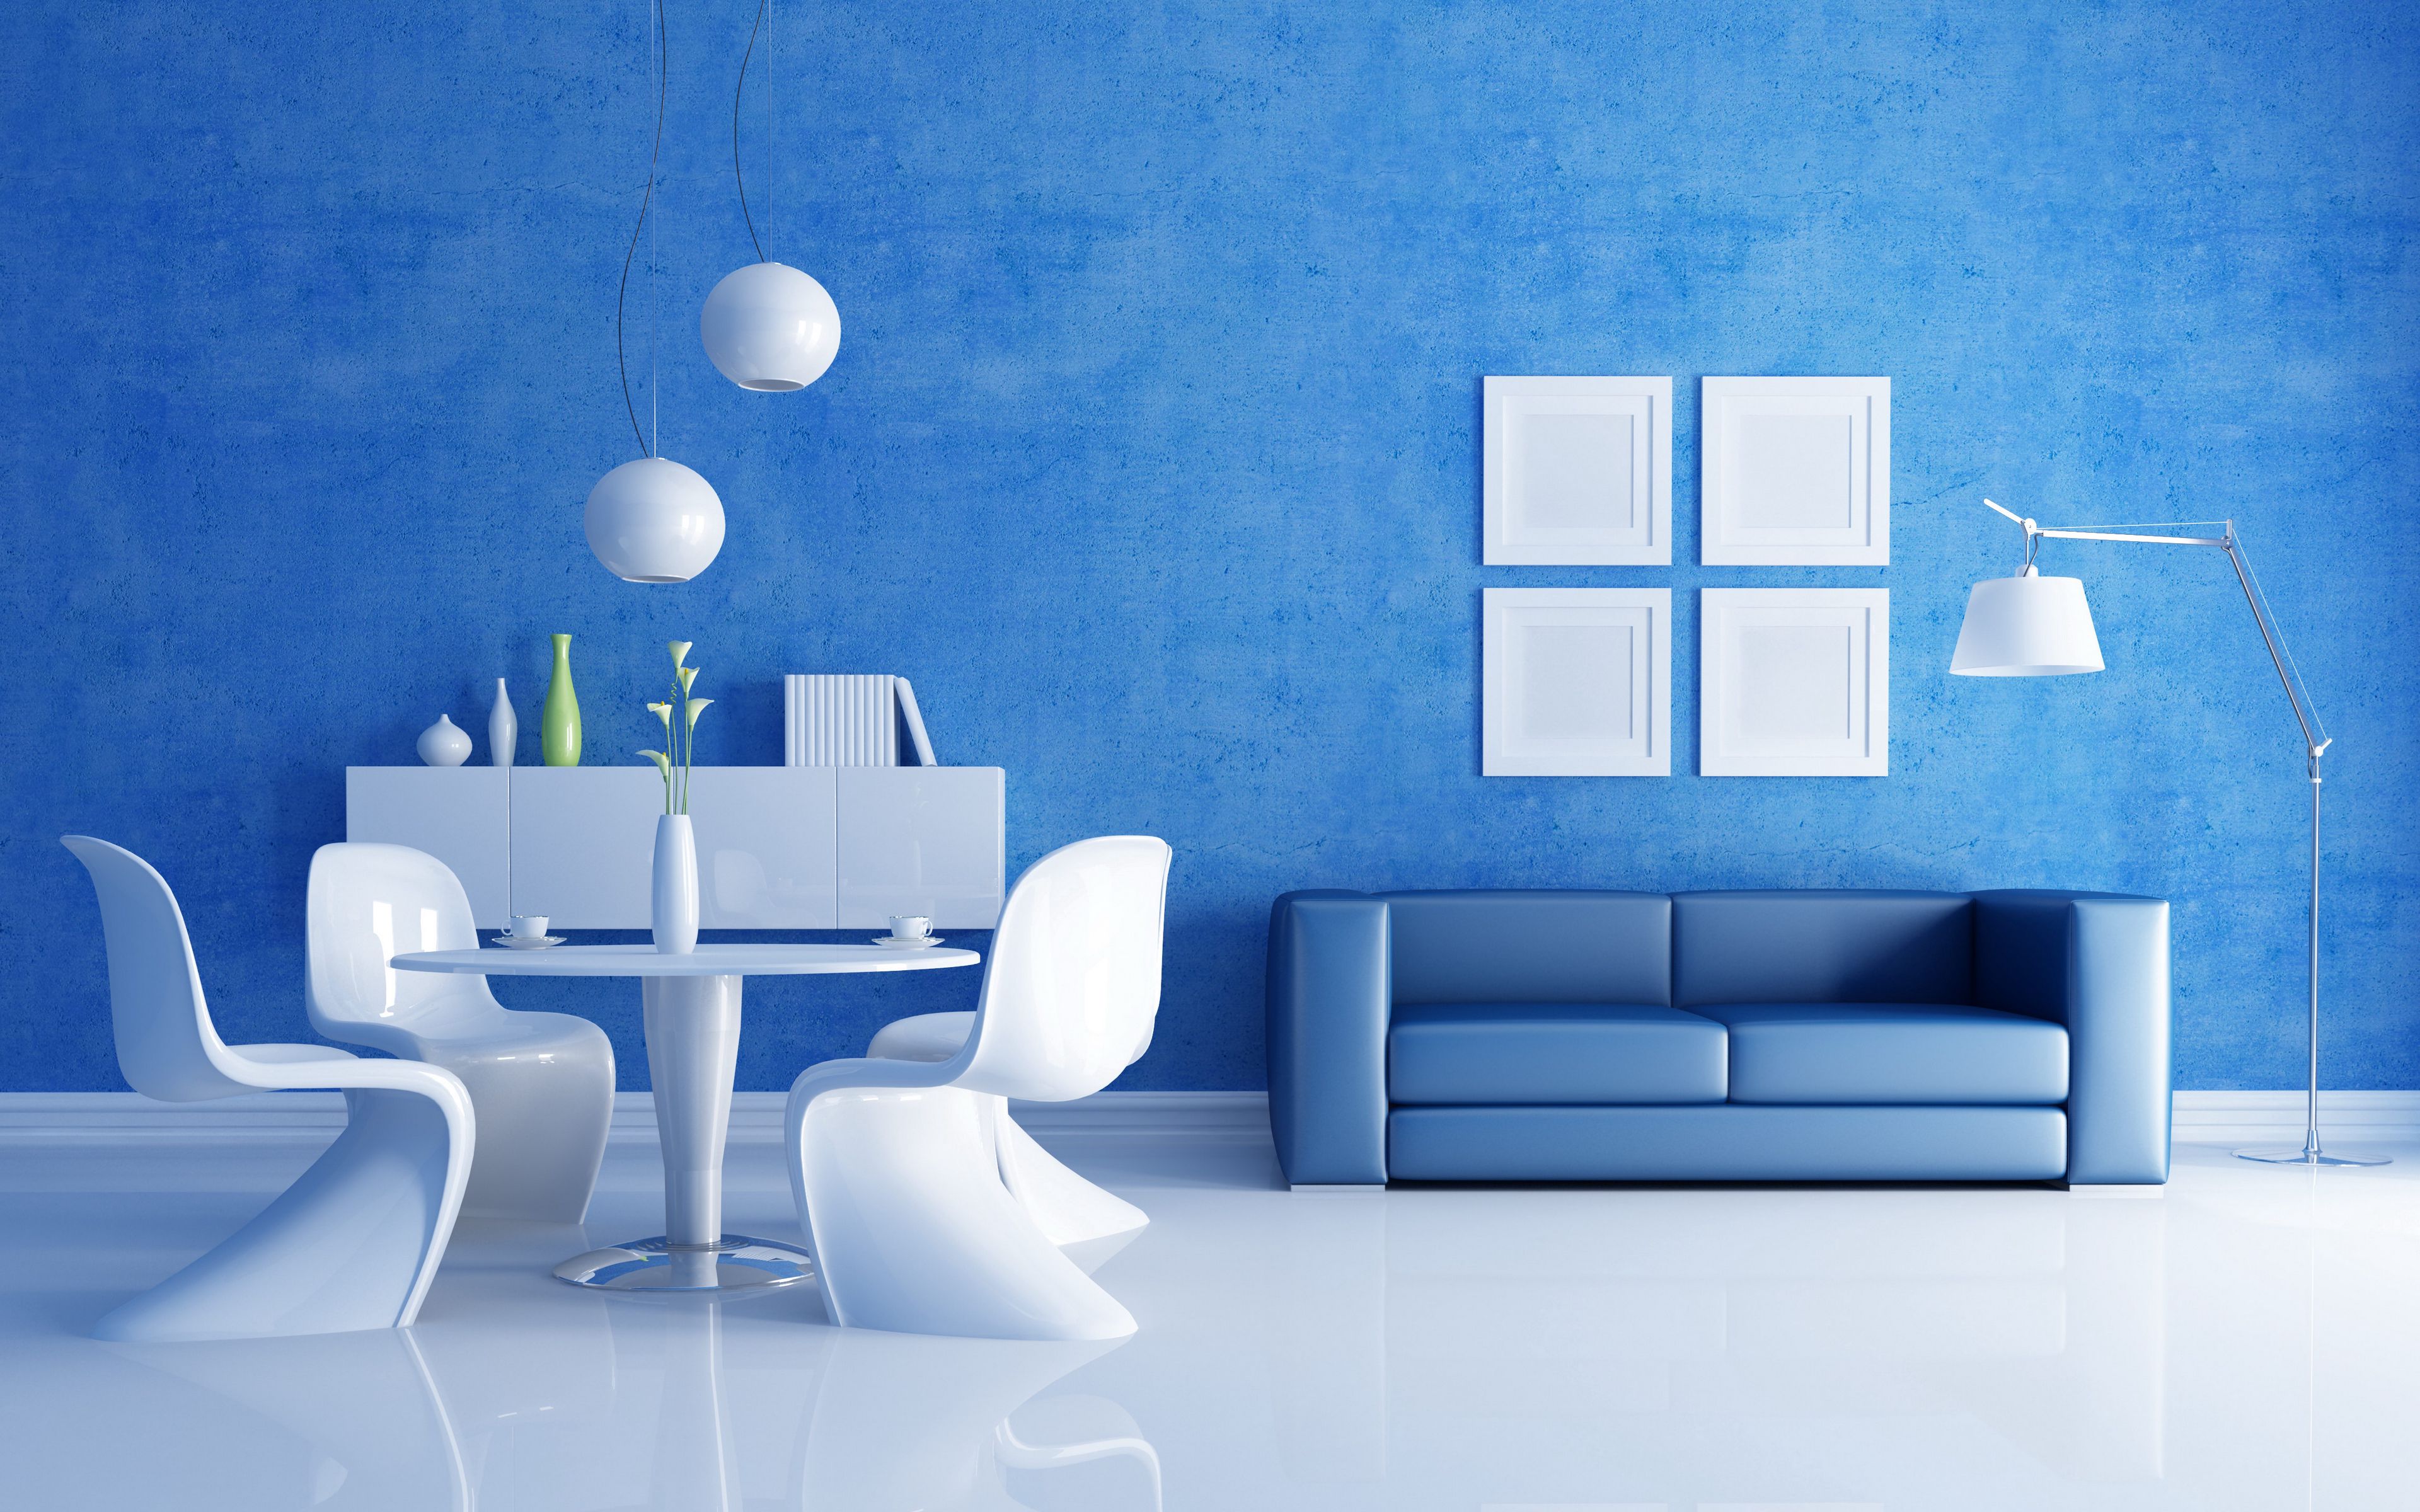 Màu xanh là một trong những gam màu được yêu thích nhất cho phòng khách. Sử dụng những món đồ trang trí phù hợp cùng với tông màu xanh, phòng khách của bạn sẽ tạo ra một không gian sống sống động, tràn đầy sức sống và tình yêu thiên nhiên.